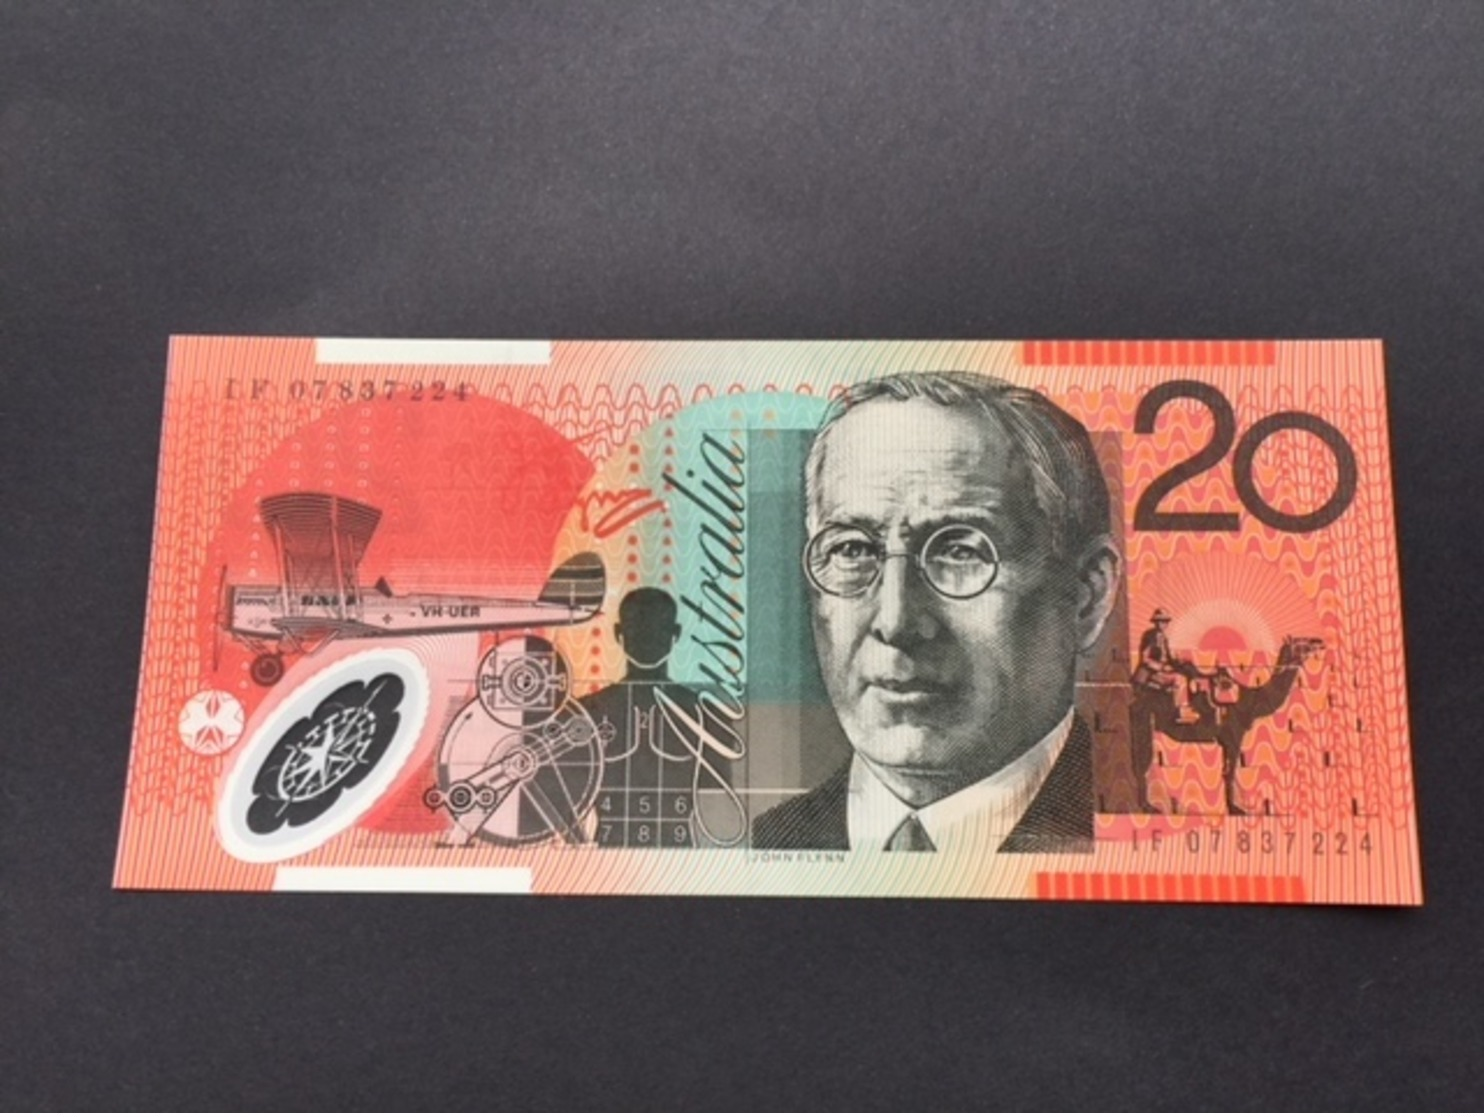 AUSTRALIA P59 20 DOLLARS 2002.2007 UNC POLY - 2001-2003 (kunststoffgeldscheine)